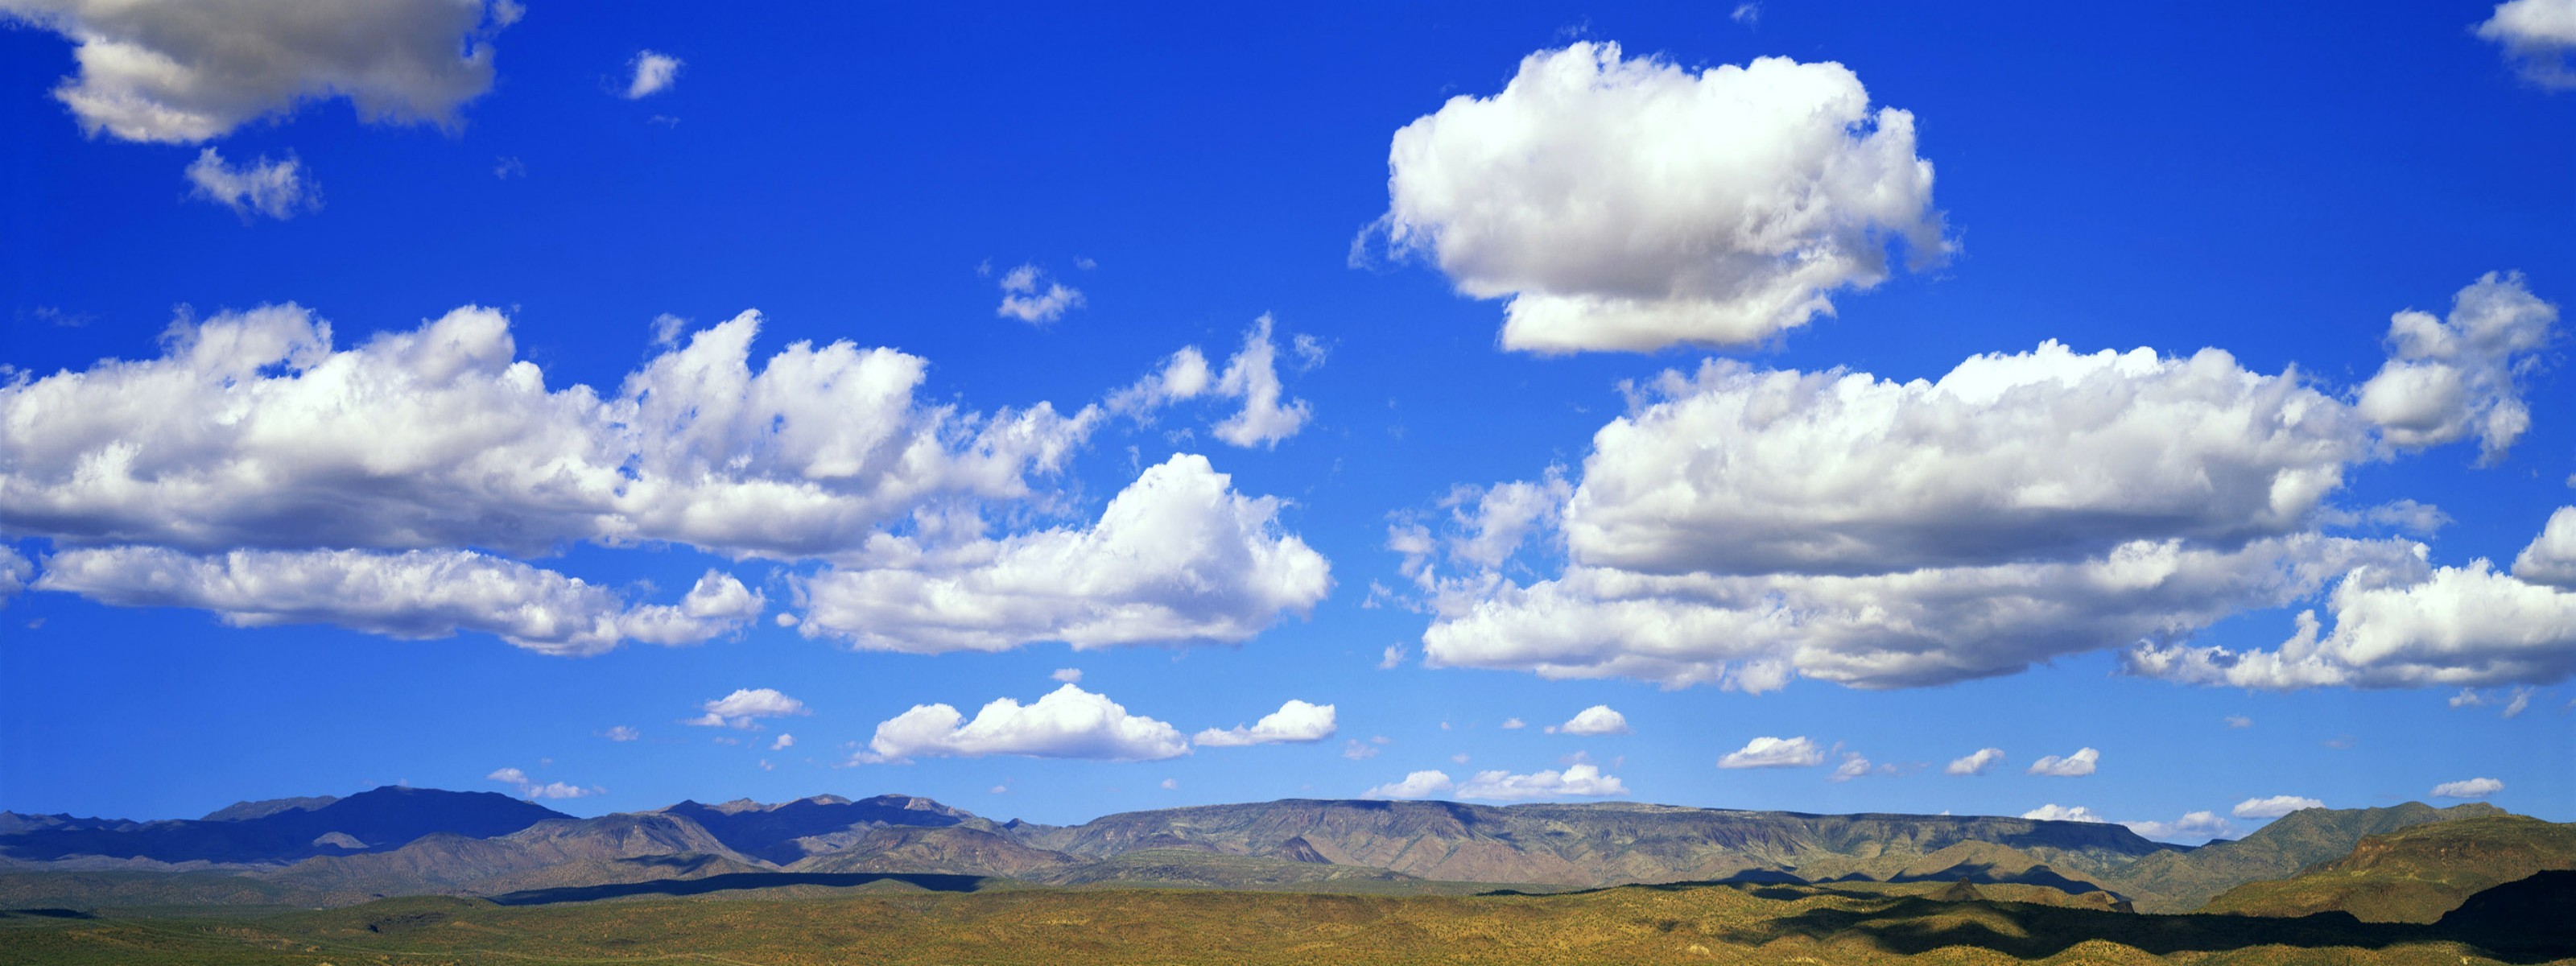 cloud wallpaper panorama